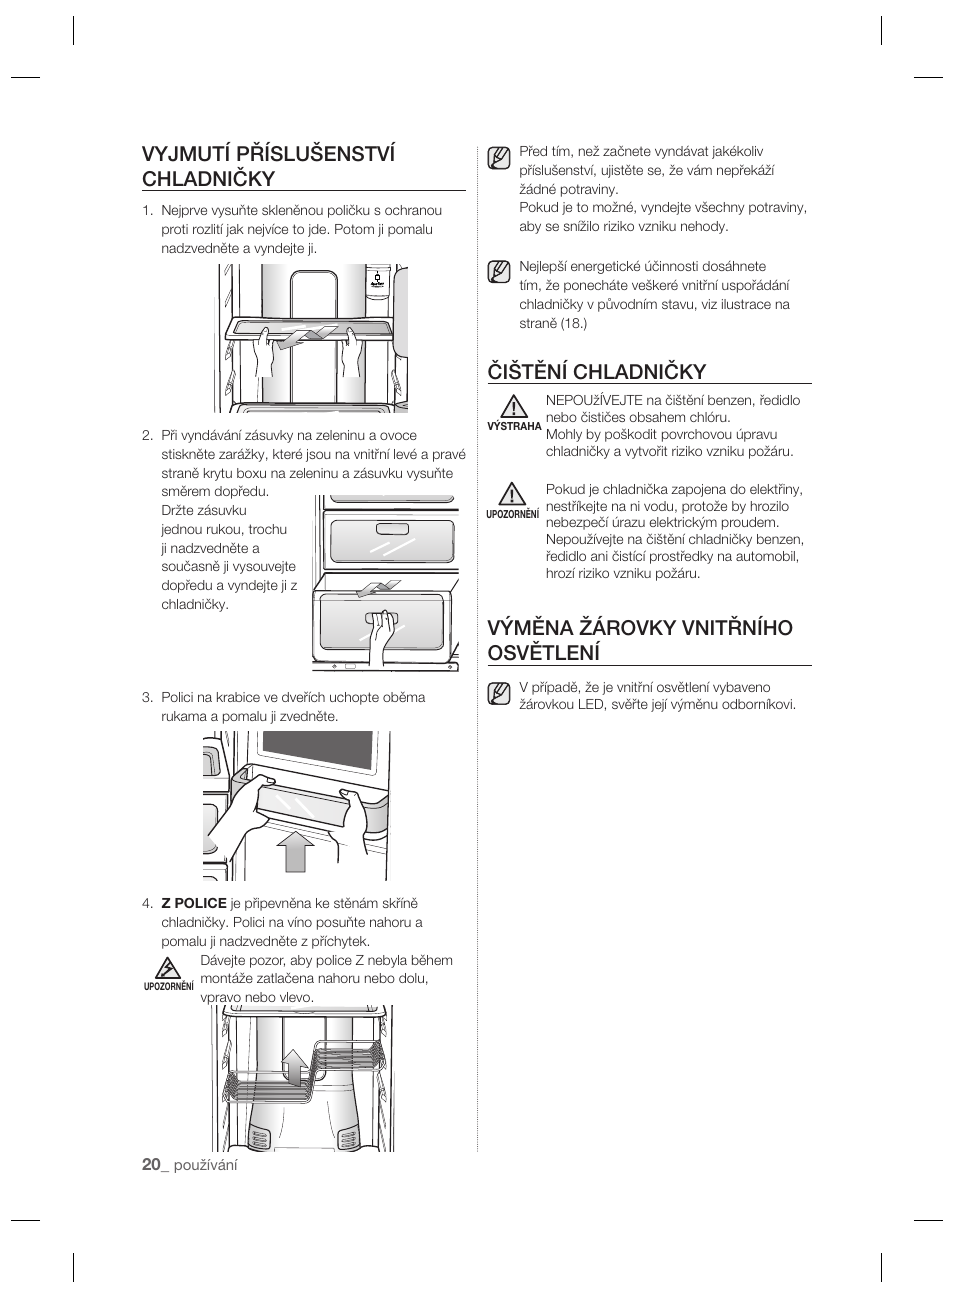 Vyjmutí příslušenství chladničky, Čištění chladničky, Výměna žárovky  vnitřního osvětlení | Samsung RSH7PNPN User Manual | Page 92 / 216 |  Original mode